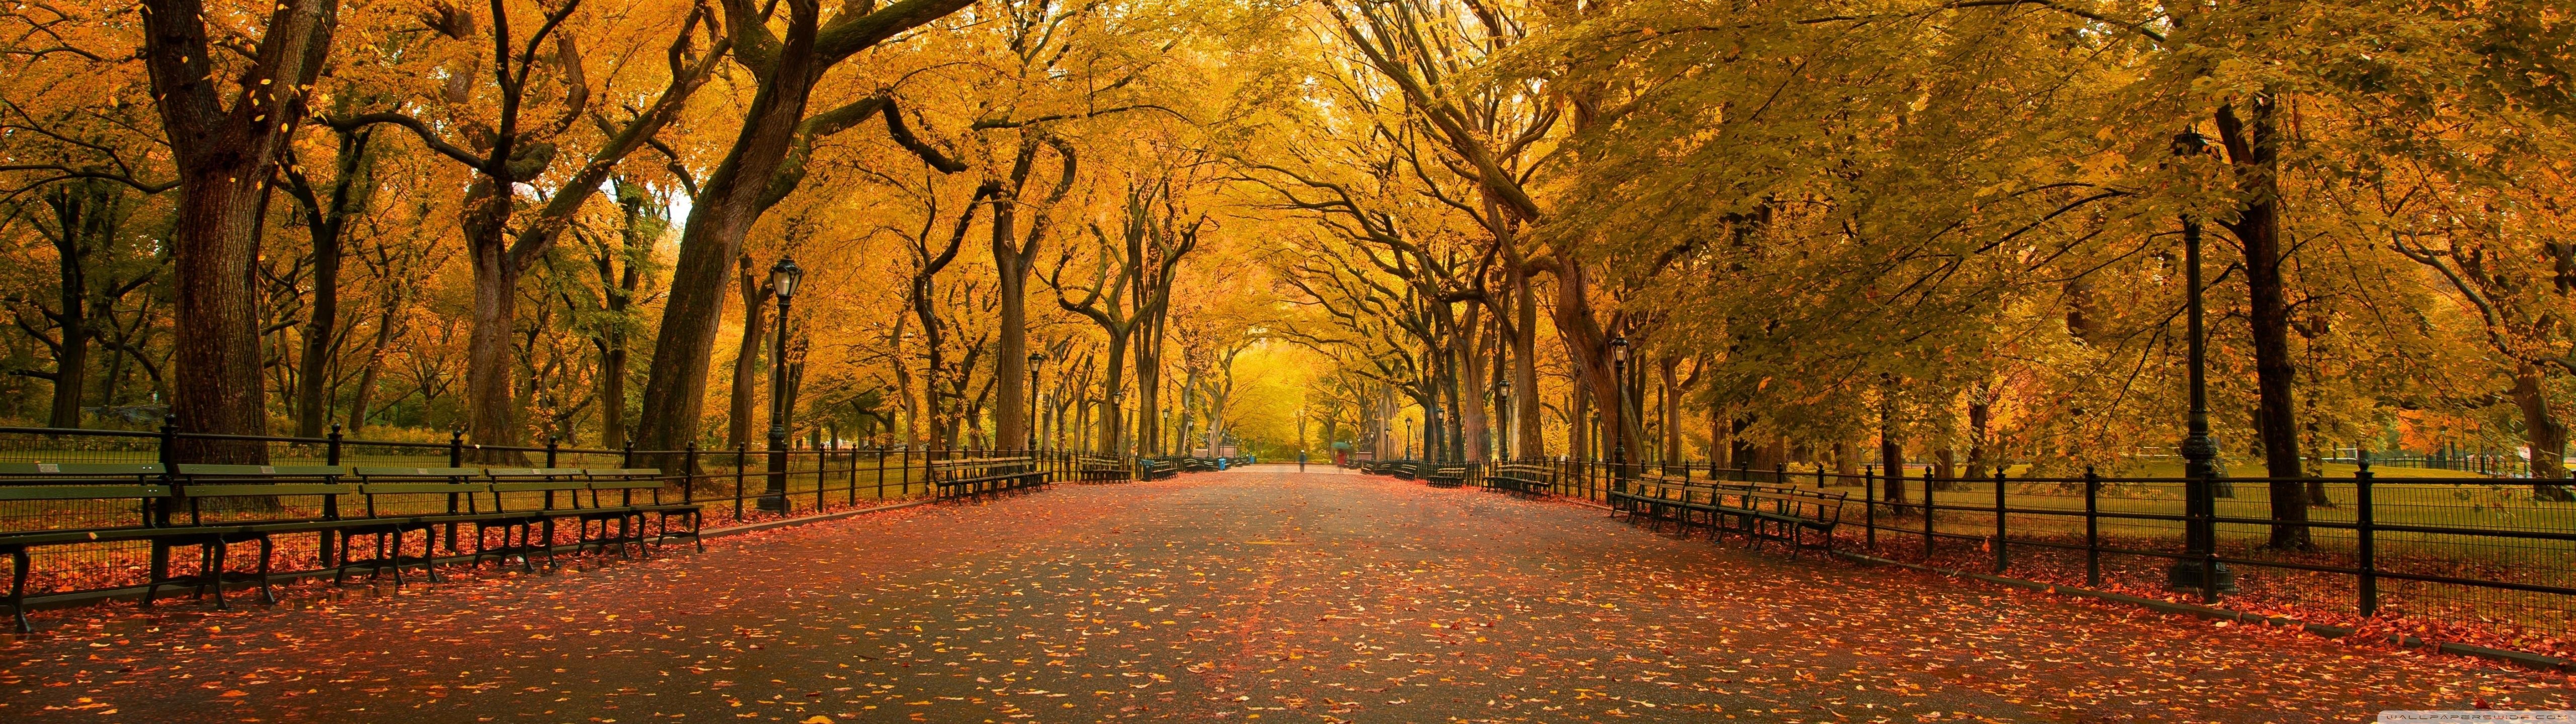 Mùa thu là khoảng thời gian đẹp nhất trong năm. Cây cối chuyển màu, gió nhẹ vàng lá, tất cả tạo nên một bức tranh thiên nhiên tuyệt đẹp. Hãy để hình nền mùa thu mang bạn vào cảm giác ấm áp và lãng mạn của mùa thu.